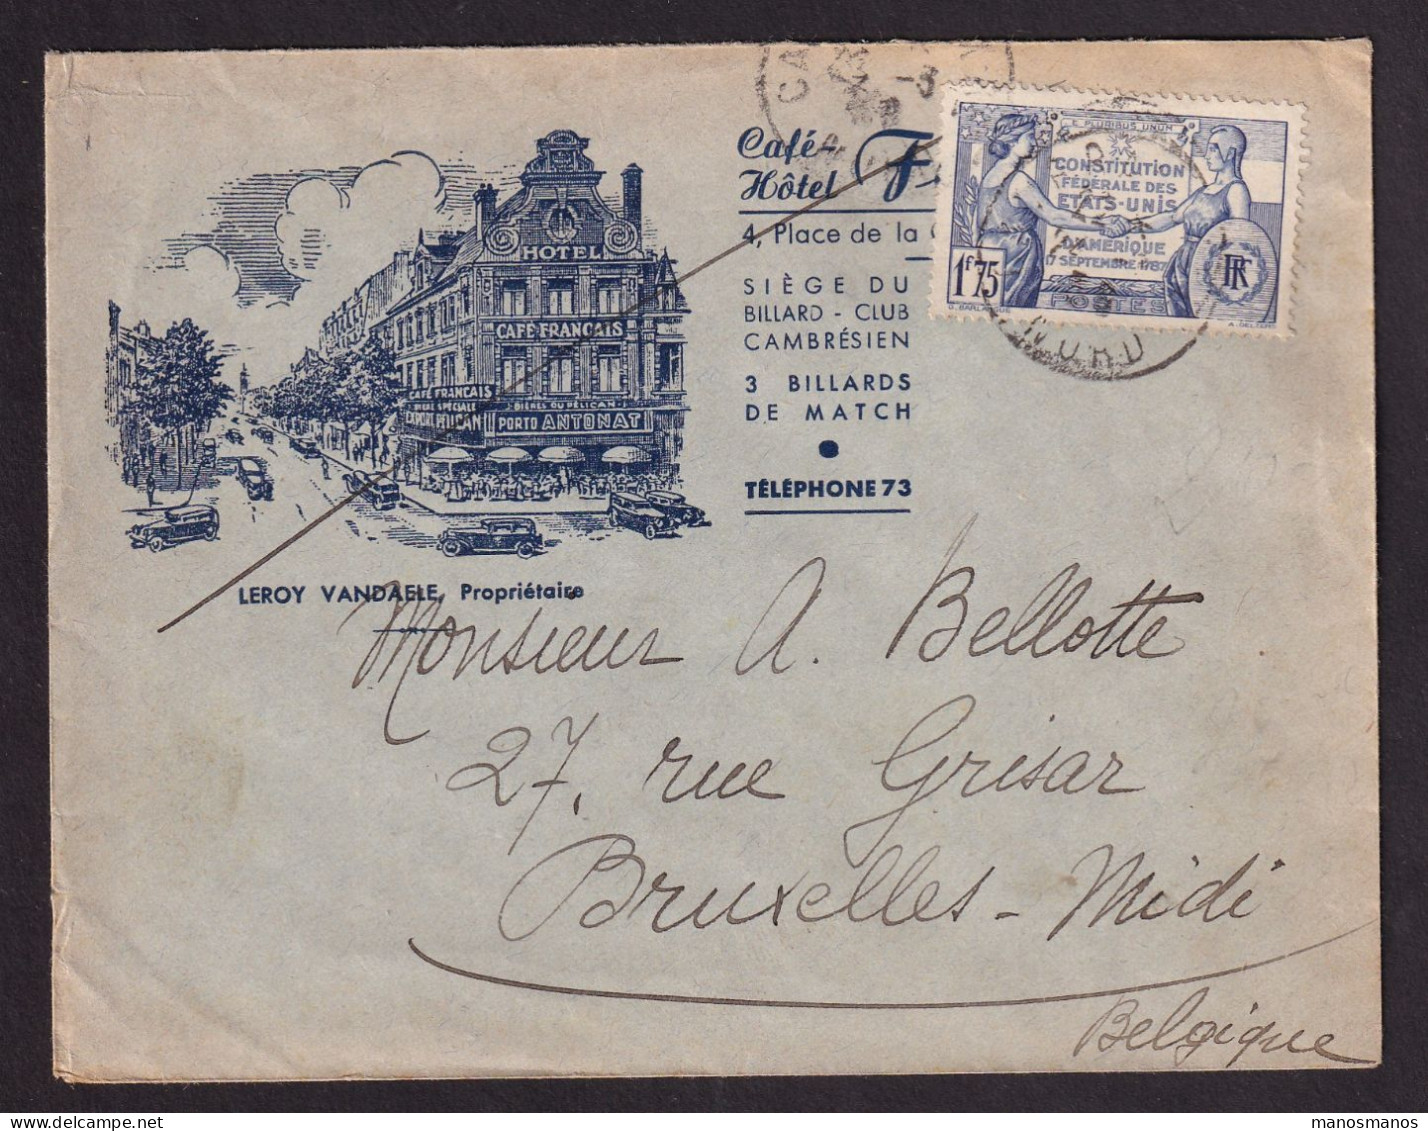 DDGG 039 - Enveloppe Illustrée "Hotel Français" TP 357 CAMBRAY 1938 Vers Bruxelles - Brieven En Documenten